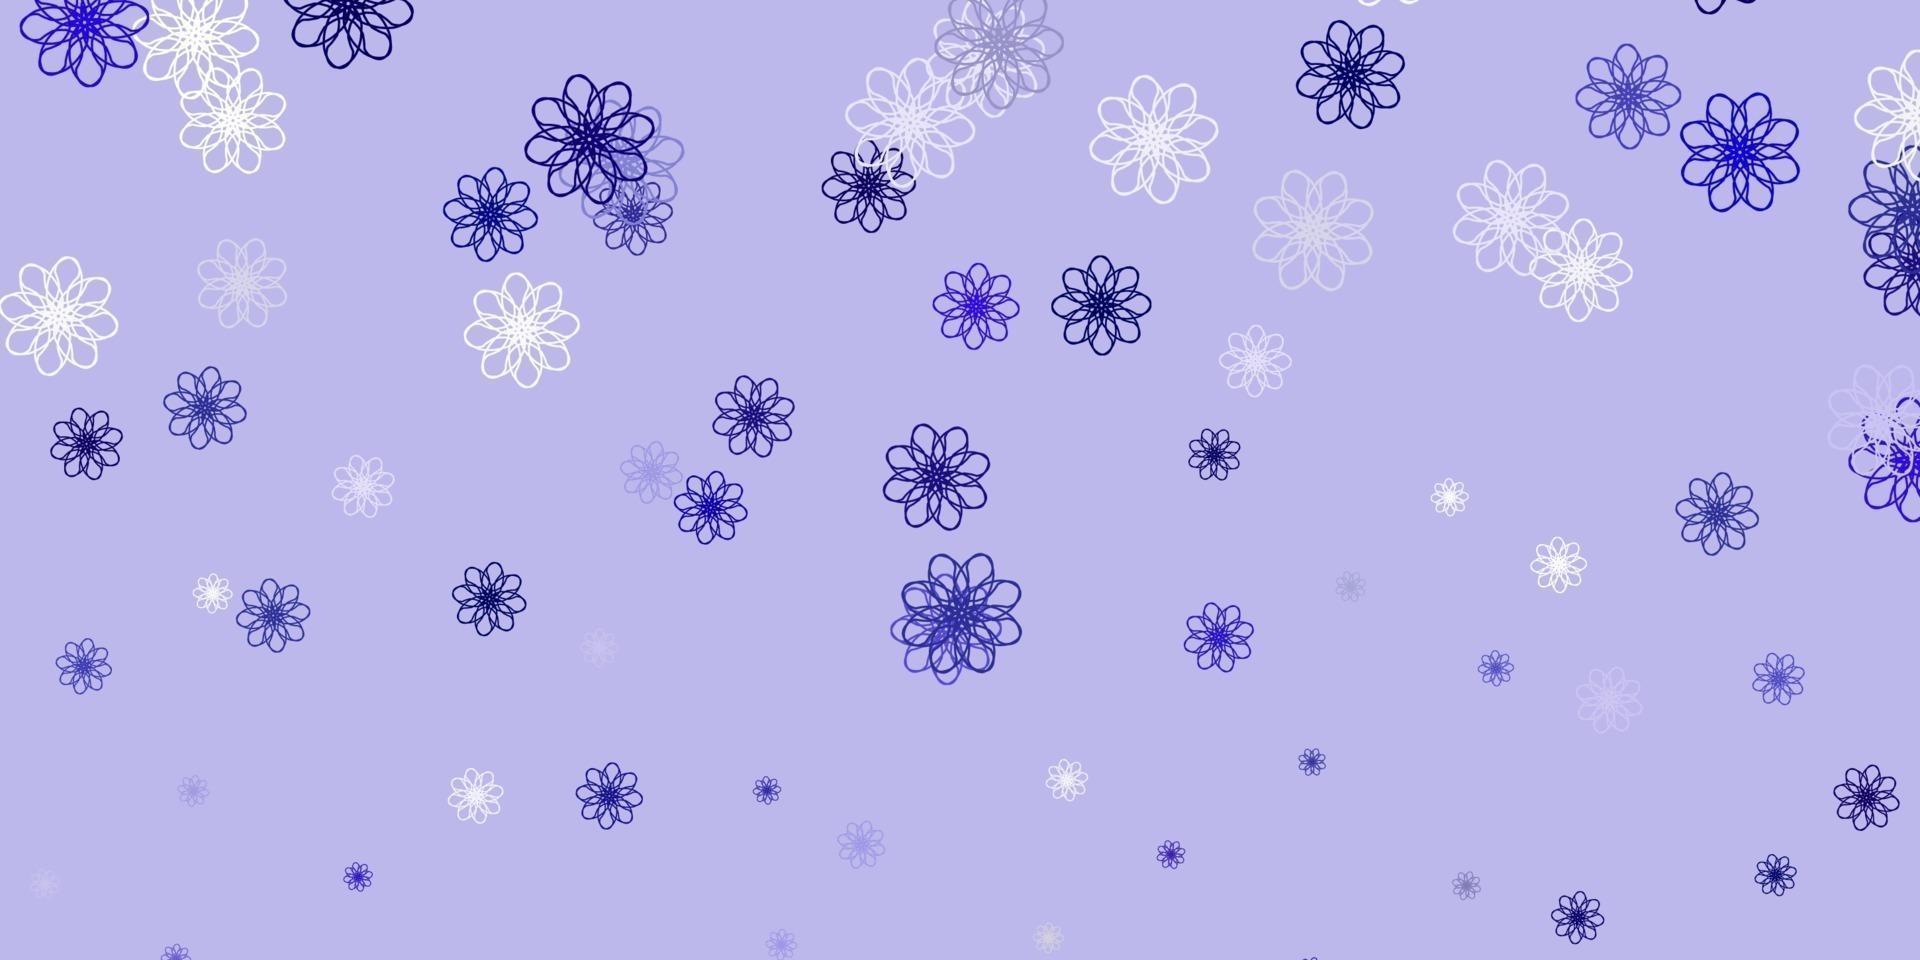 sfondo doodle vettoriale viola chiaro con fiori.